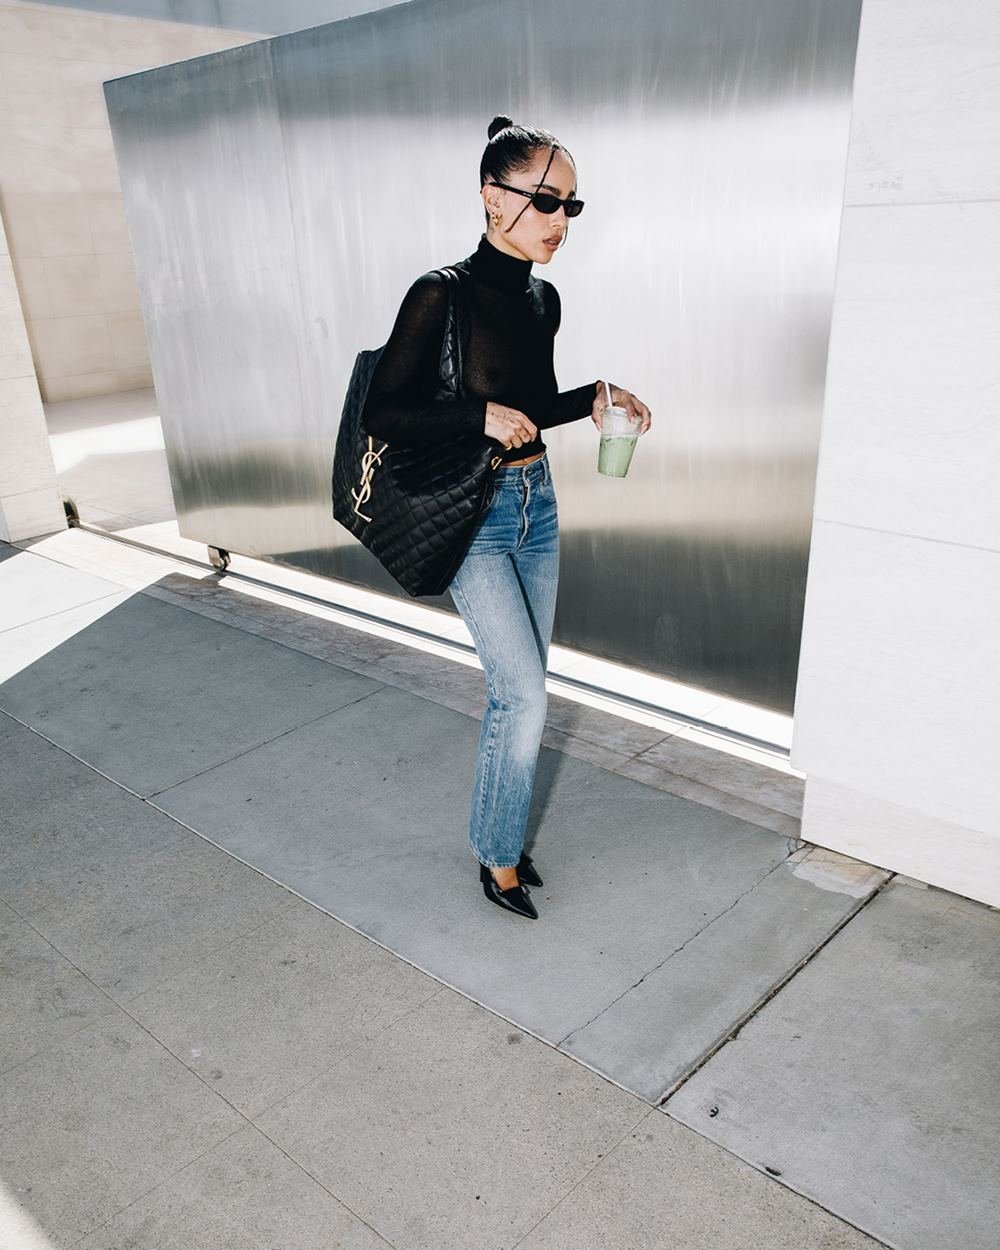 A atriz Zoë Kravitz, uma mulher negra e jovem, de cabelo preto liso, posa para campanha da marca Saint Laurent enquanto anda na rua. Ela usa uma blusa preta, de manga longa, uma calça jeans, óculos escuros e uma bolsa preta, grande, modelo Icare. - Metrópoles